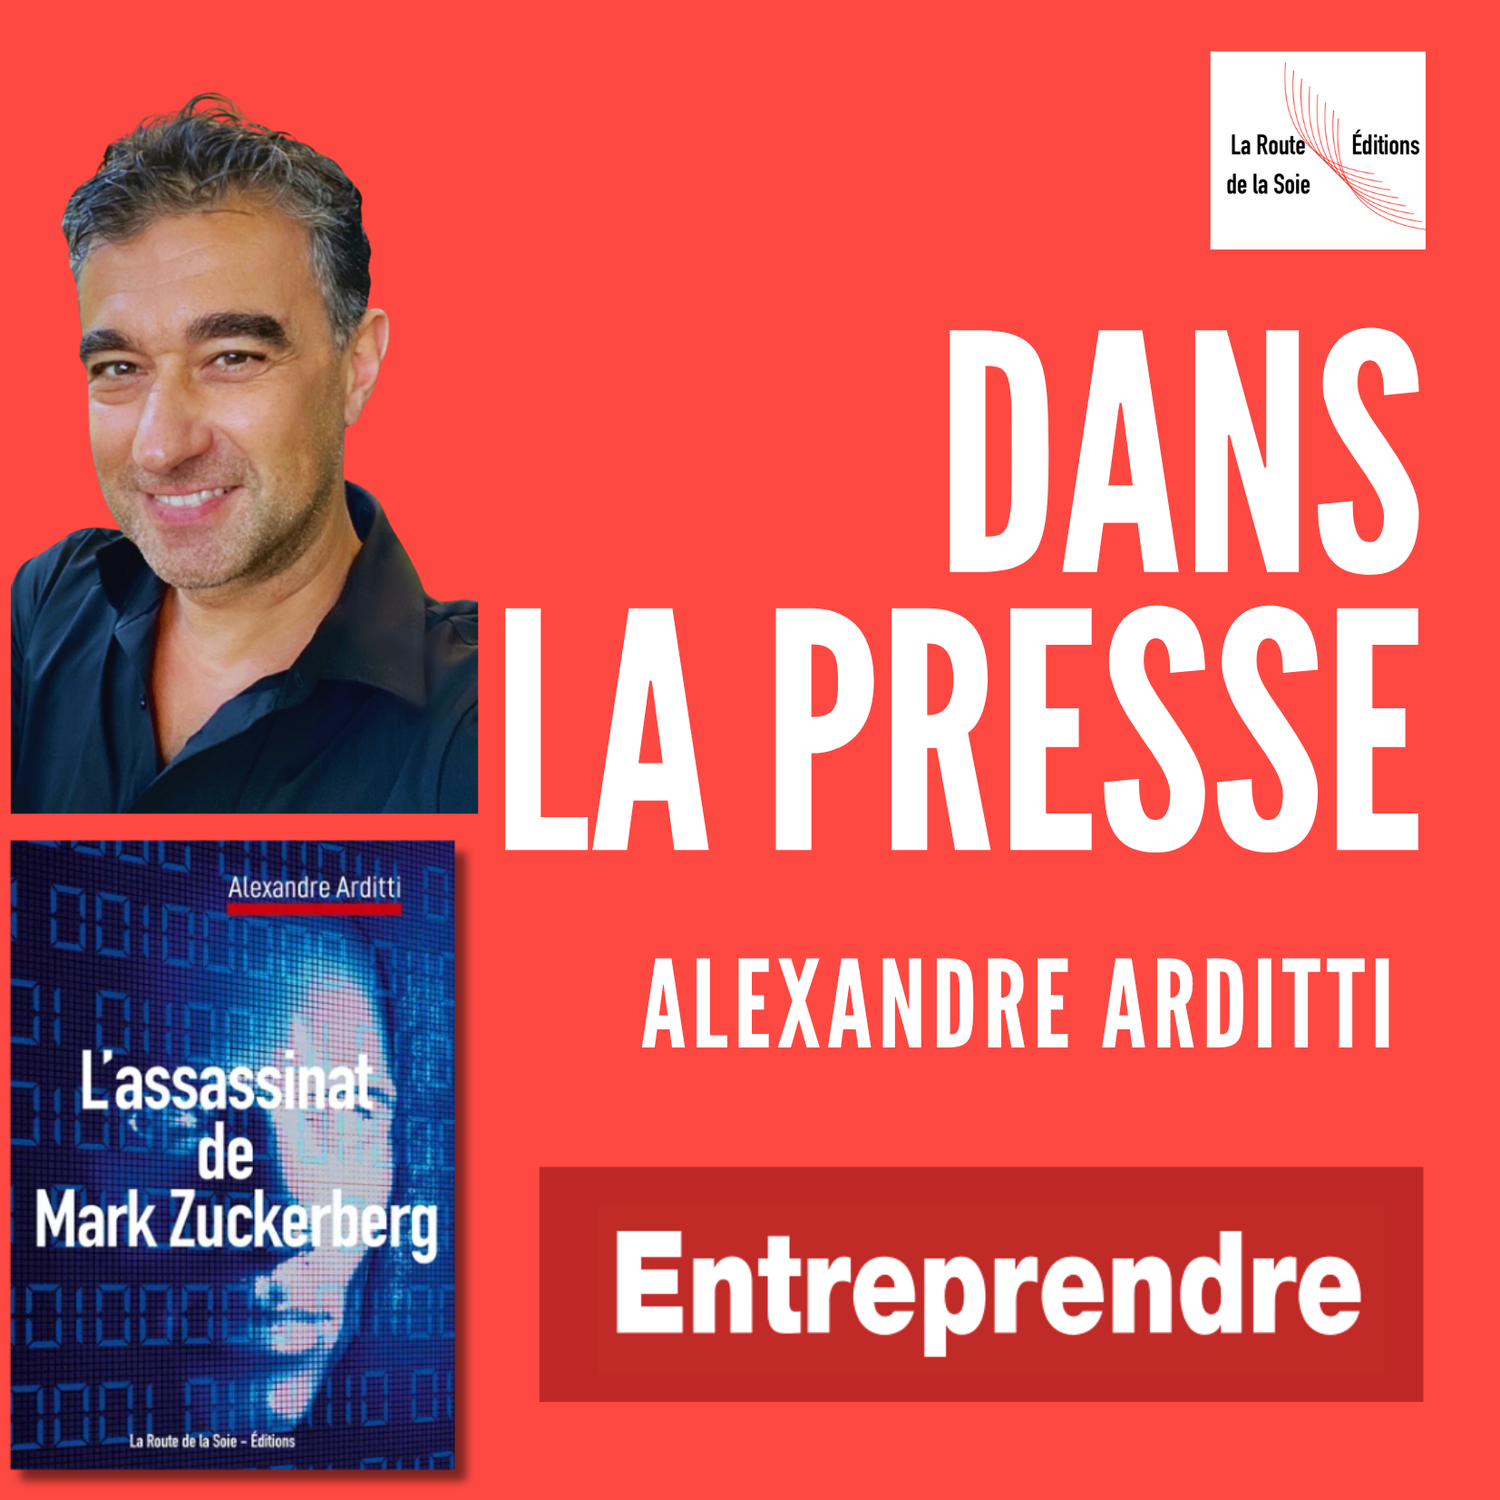 Alexandre Arditti dans le journal Entreprendre